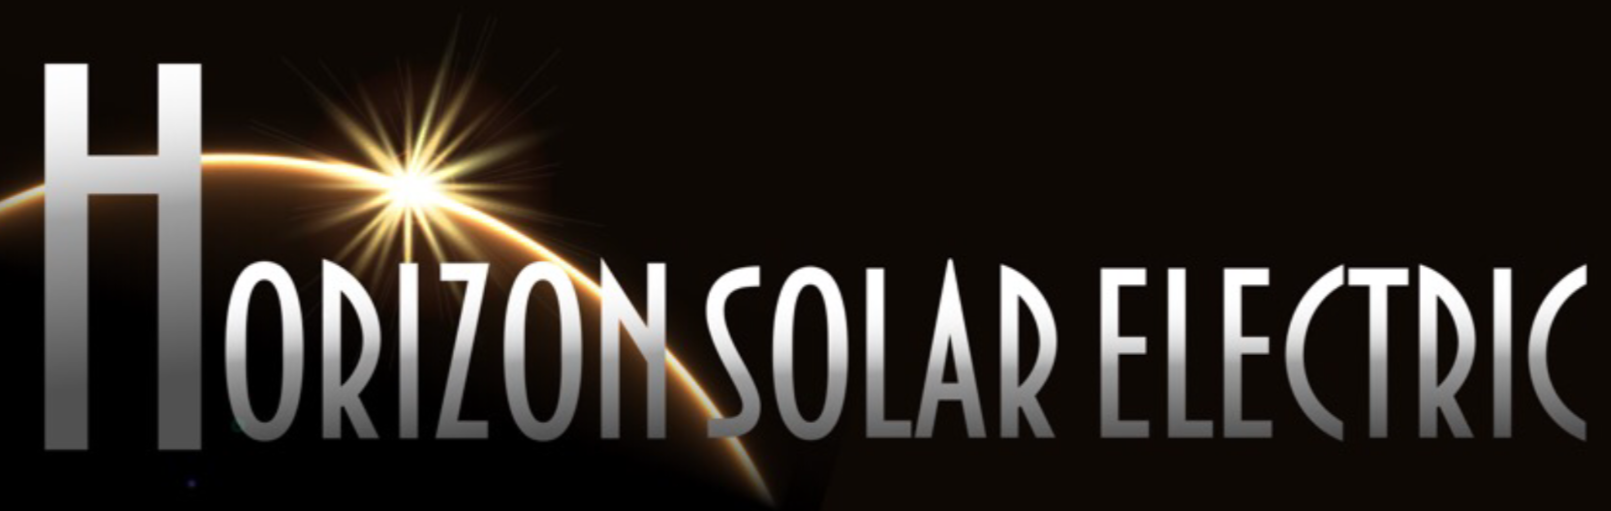 Horizon Solar Electric Logo